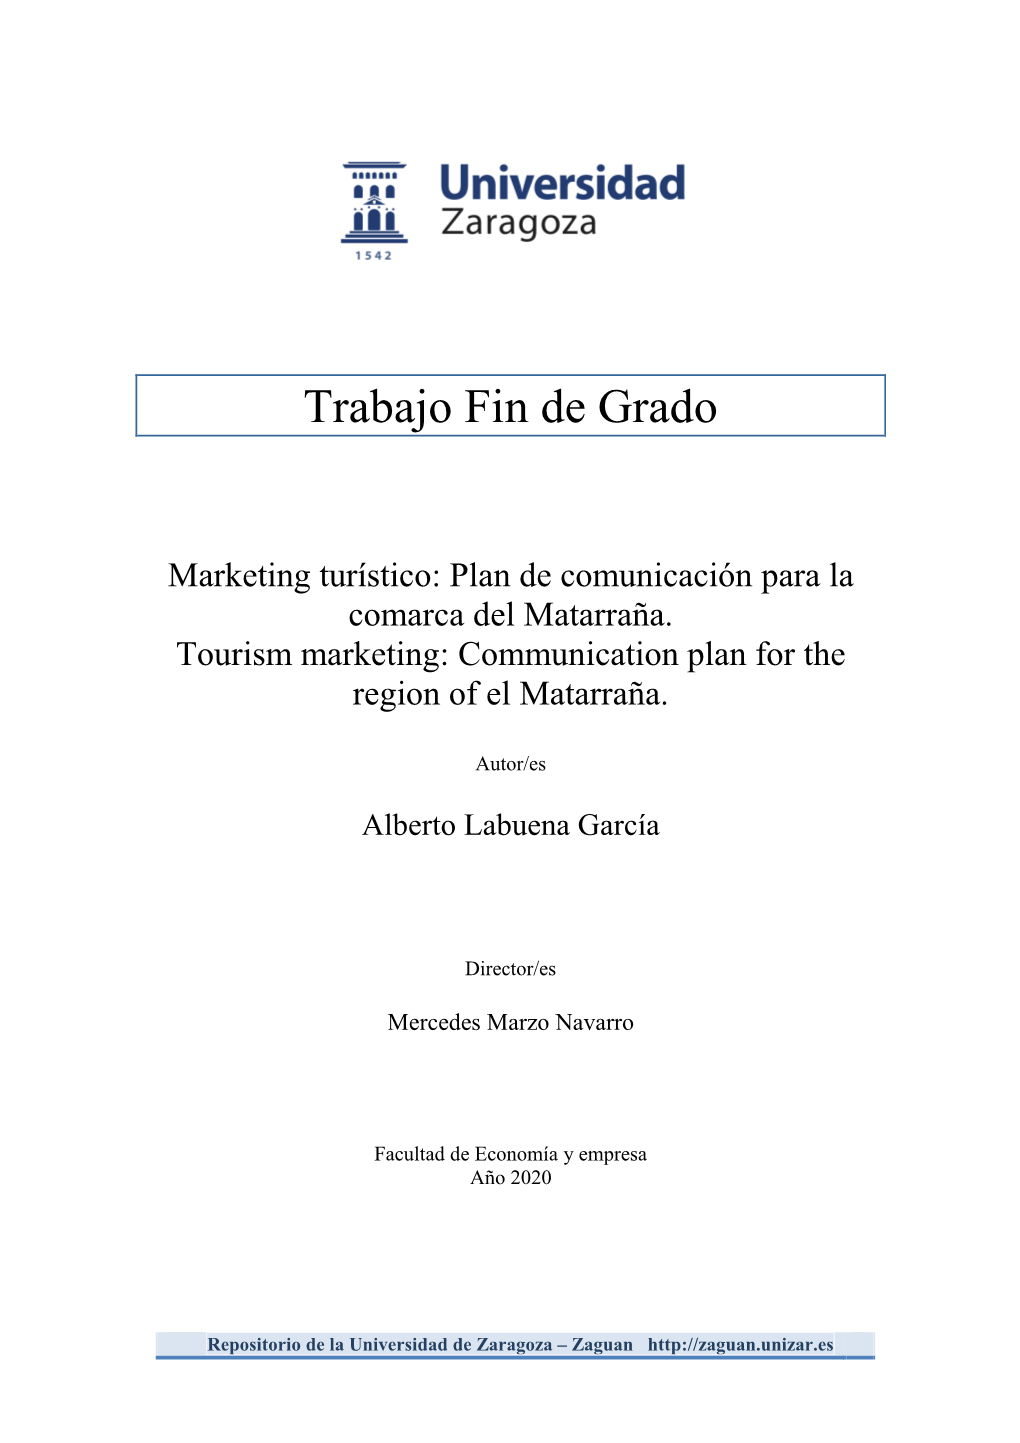 Plan De Comunicación Para La Comarca Del Matarraña. Tourism Marketing: Communication Plan for the Region of El Matarraña